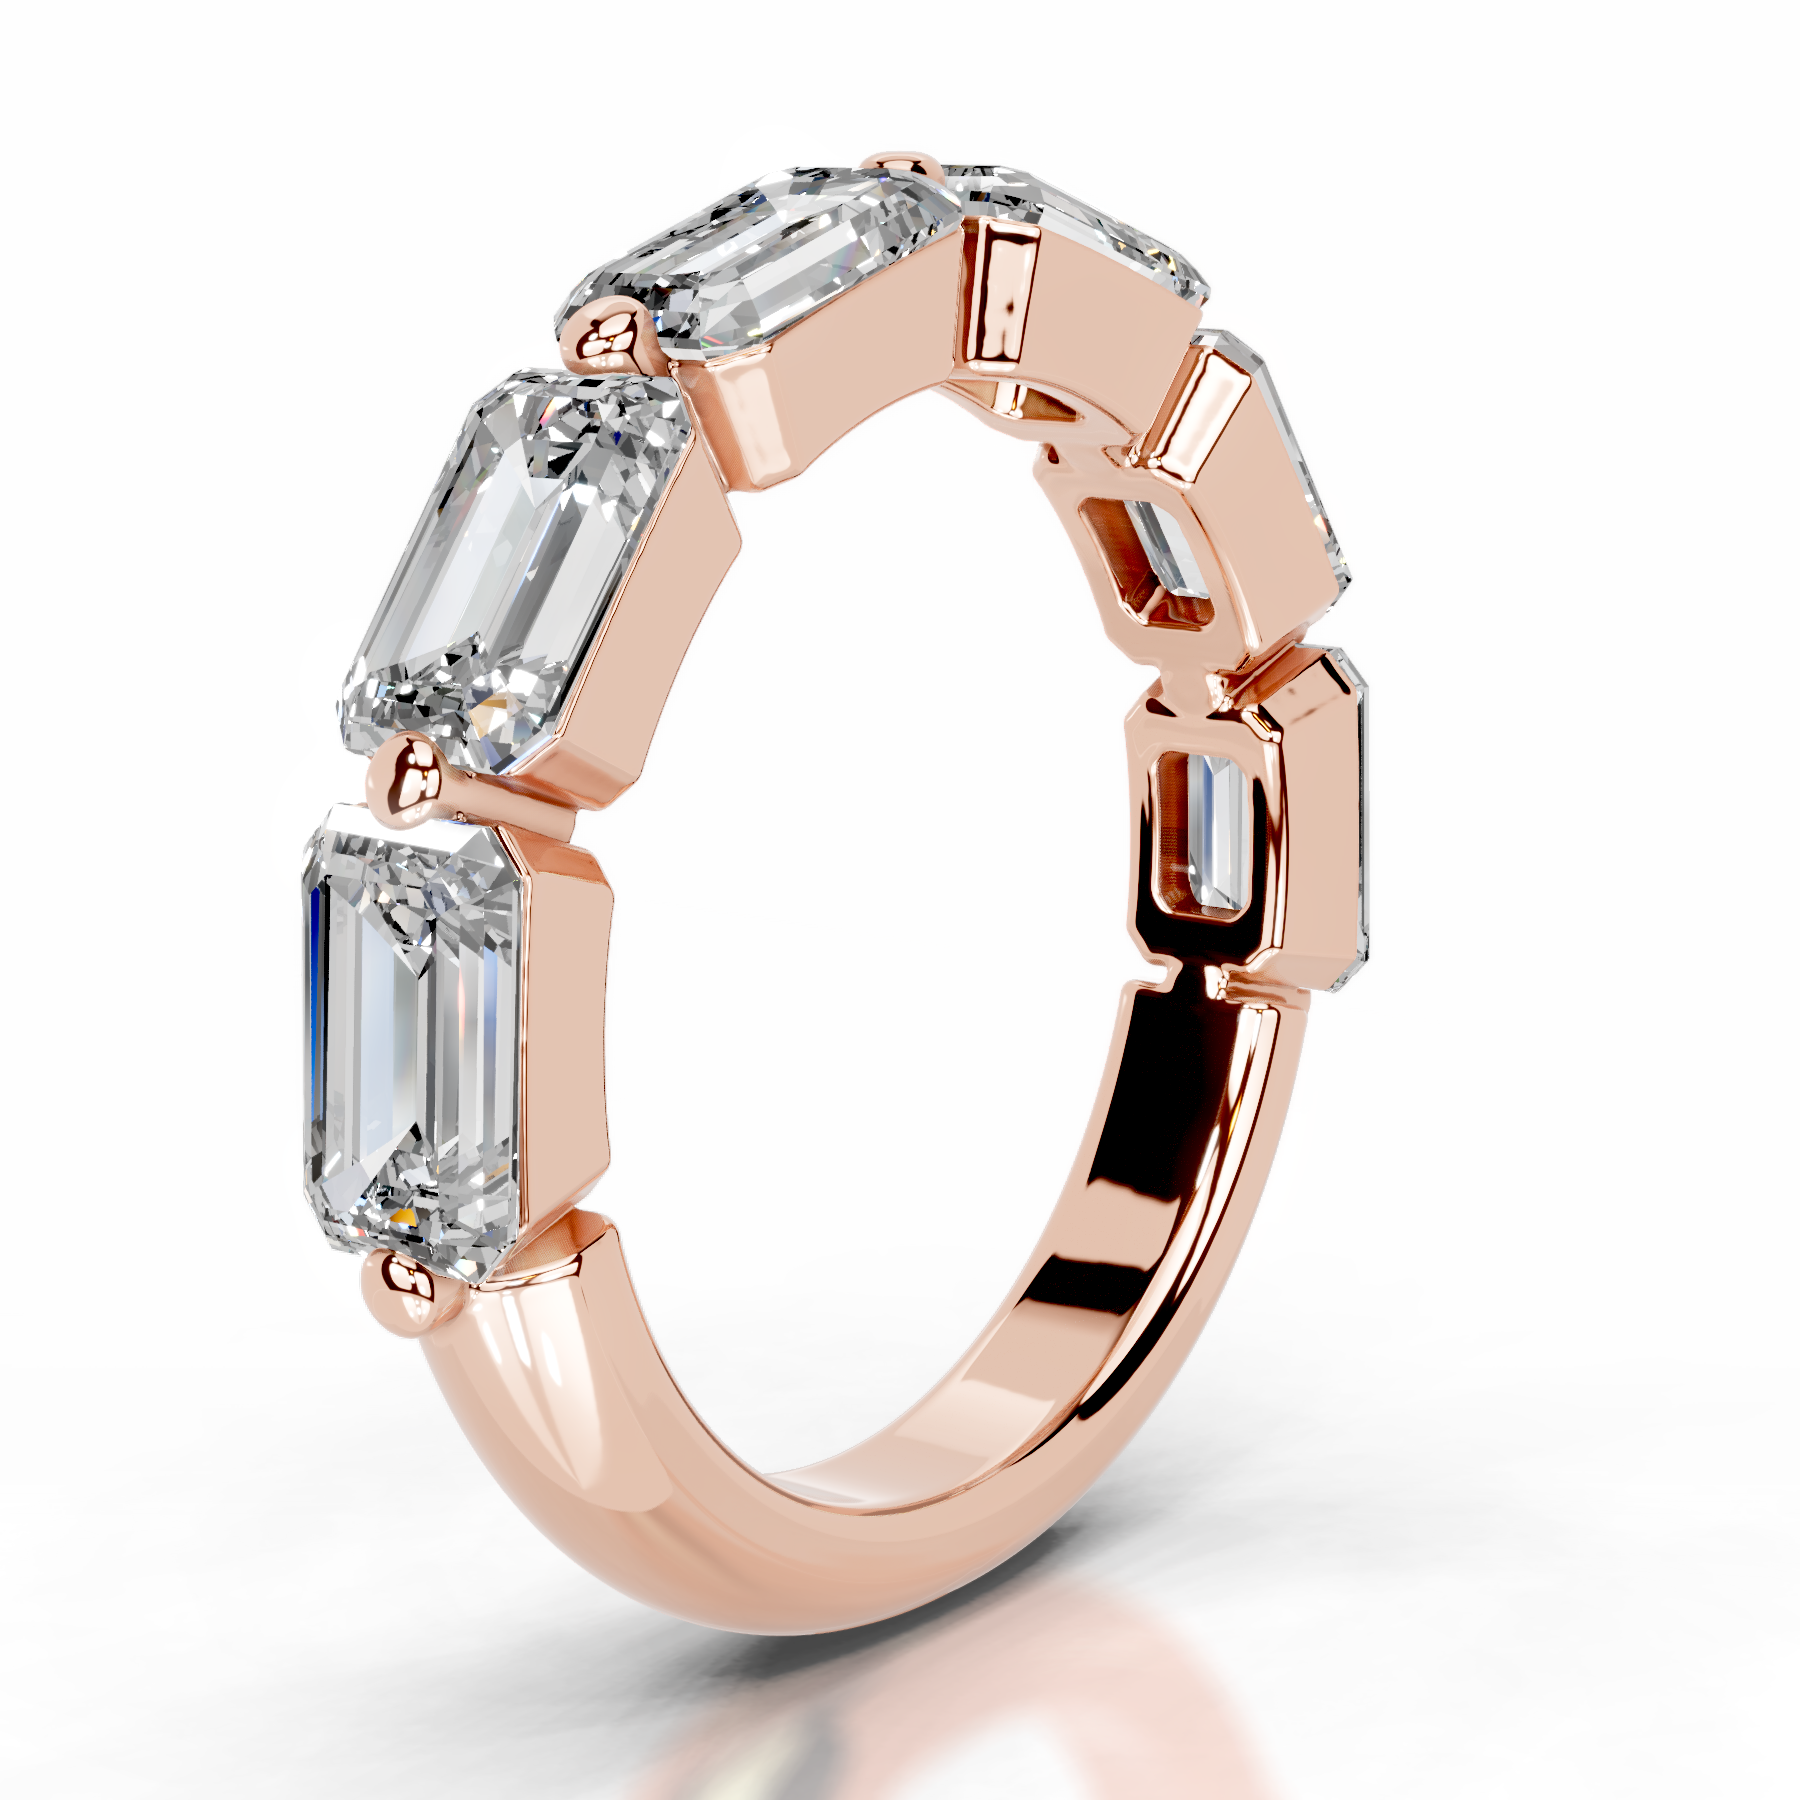 Quisha Diamond Wedding Ring   (2 Carat) -14K Rose Gold